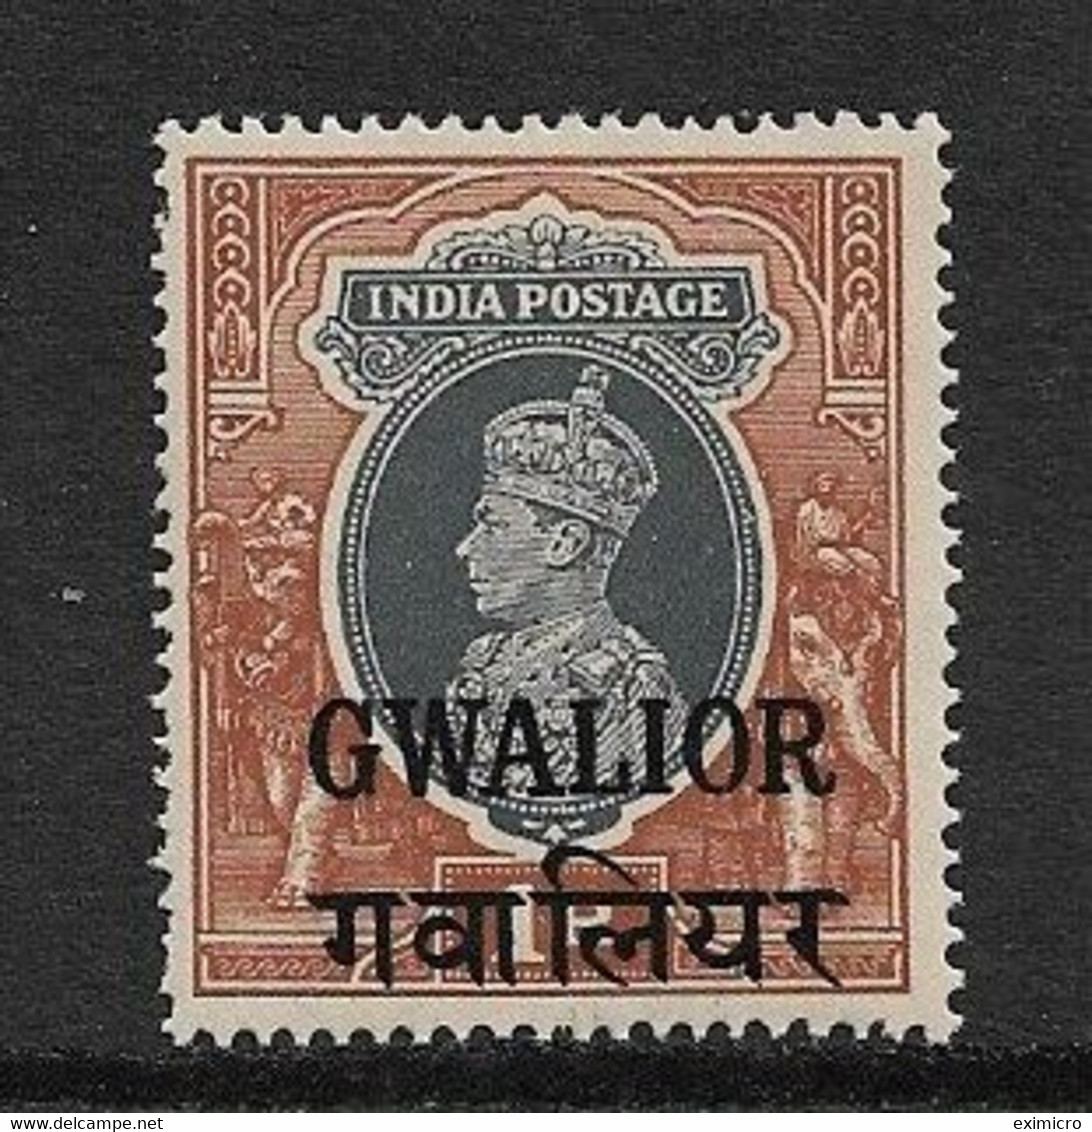 INDIA - GWALIOR 1942 1R SG 112 UNMOUNTED MINT Cat £13 - Gwalior